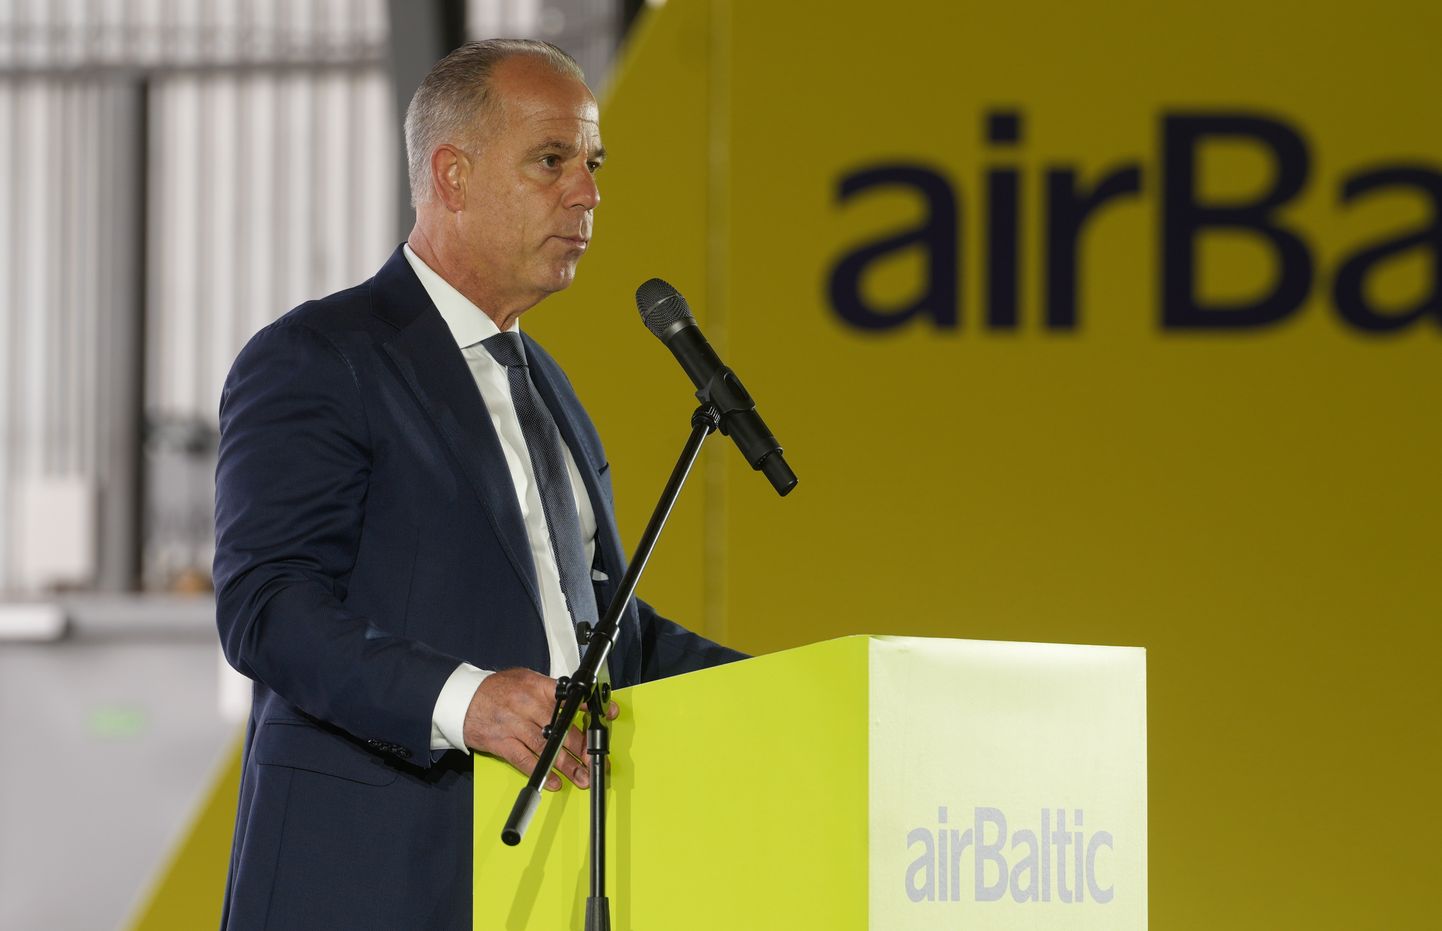 Nacionālās lidsabiedrības "airBaltic" izpilddirektors Martins Gauss piedalās Latvijas nacionālās lidsabiedrības "airBaltic" lidmašīnu "Airbus A220-300" prezentācijā.